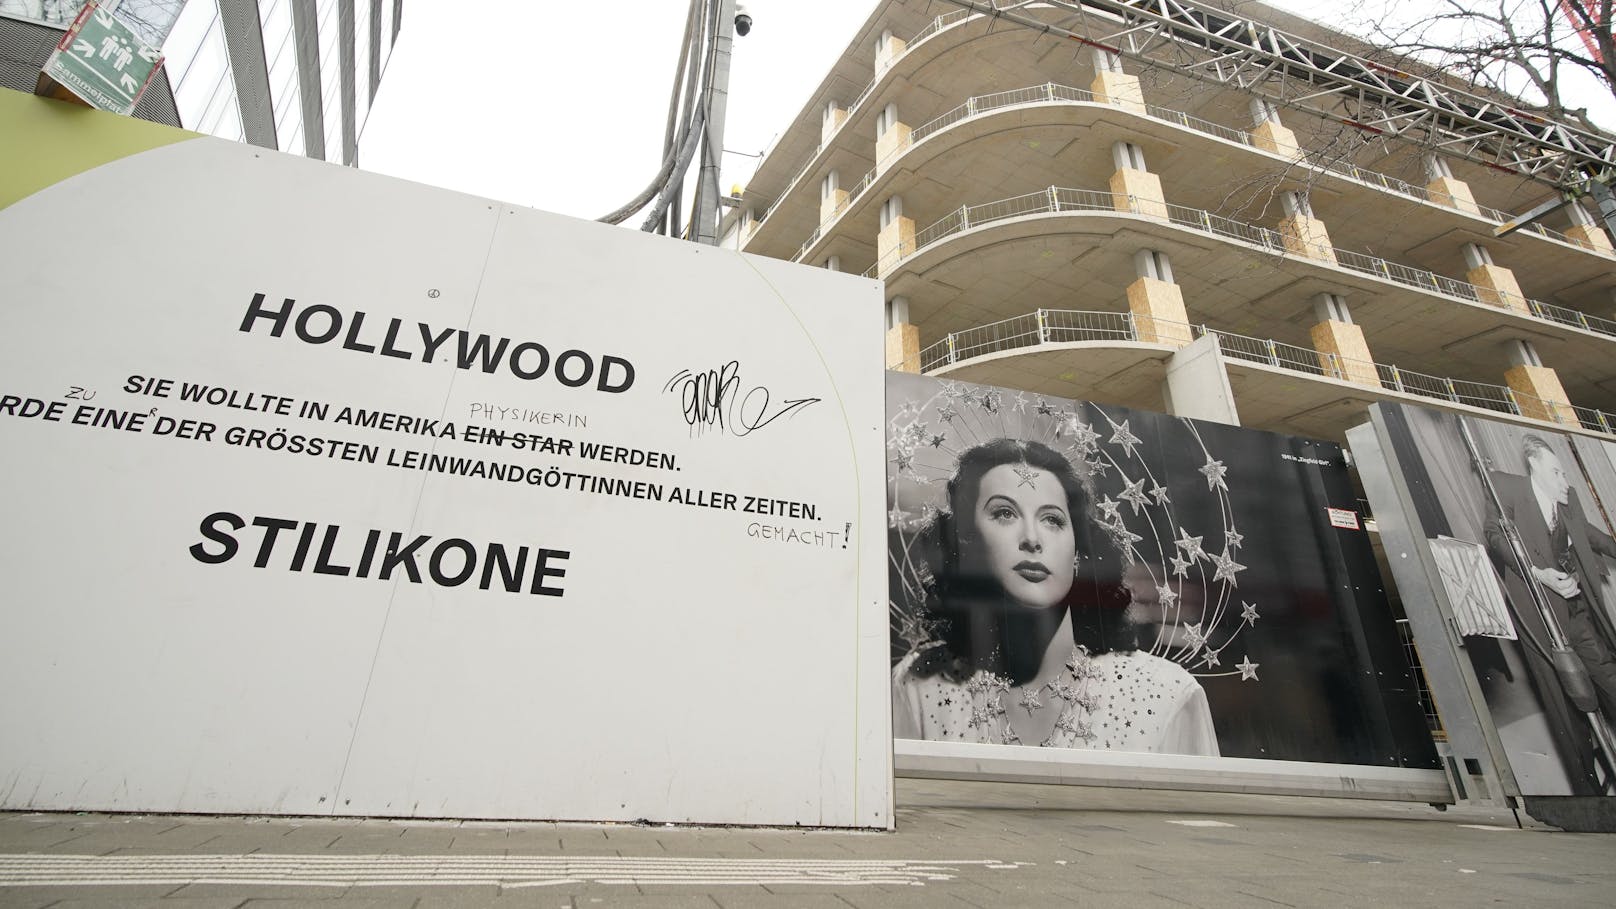 Das Benko-Kaufhaus sollte nach der in Wien geborenen Hollywood-Diva und Erfinderin Hedy Lamarr benannt werden.